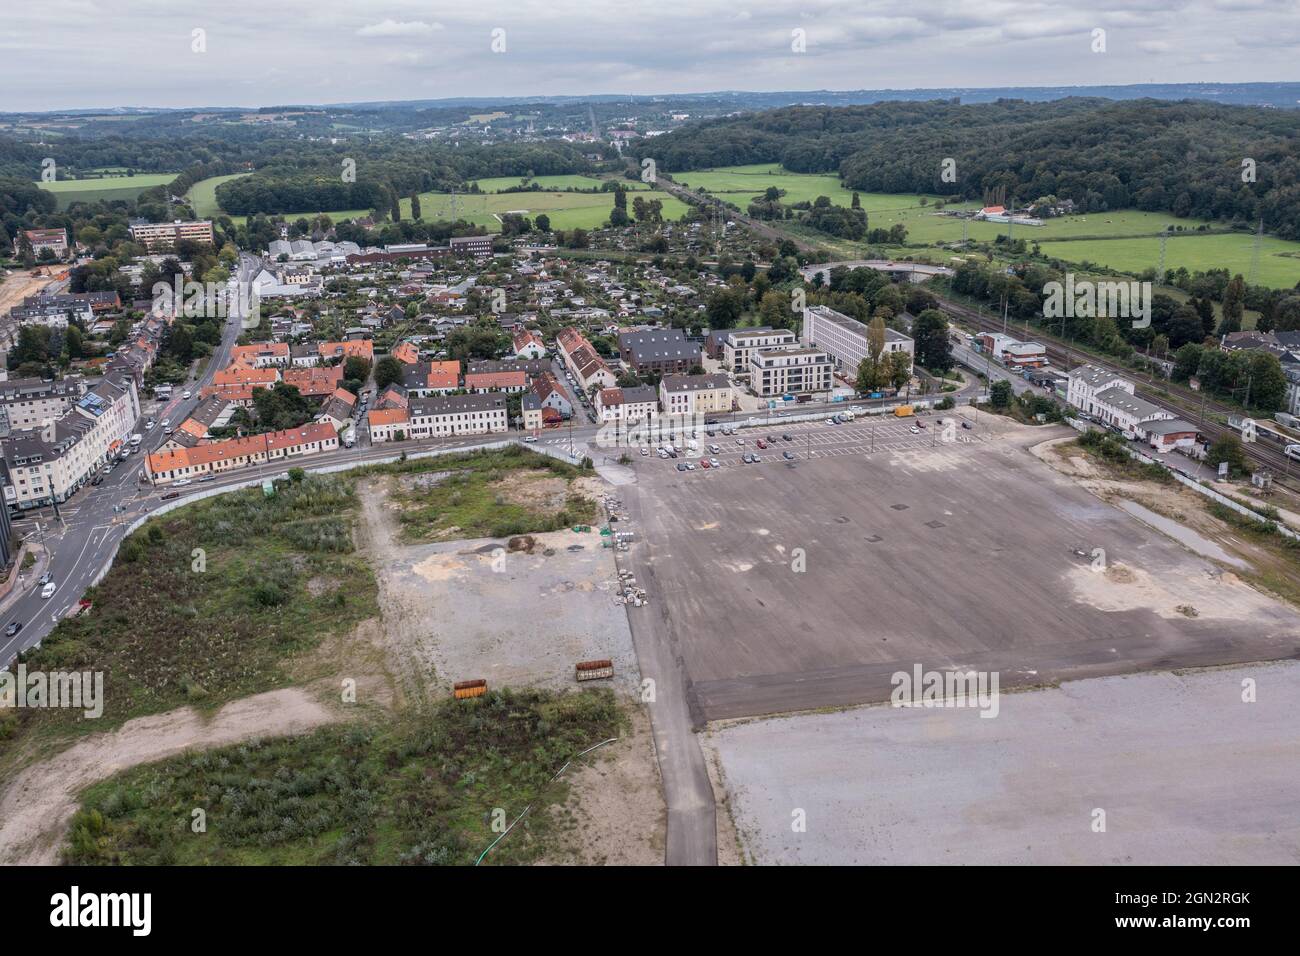 Gerresheim, Stadteil von Düsseldorf. Auf dem Gelände der ehemaligen Gerresheimer Glashütte sollen jetzt Wohnungen gebaut werden. Foto Stock